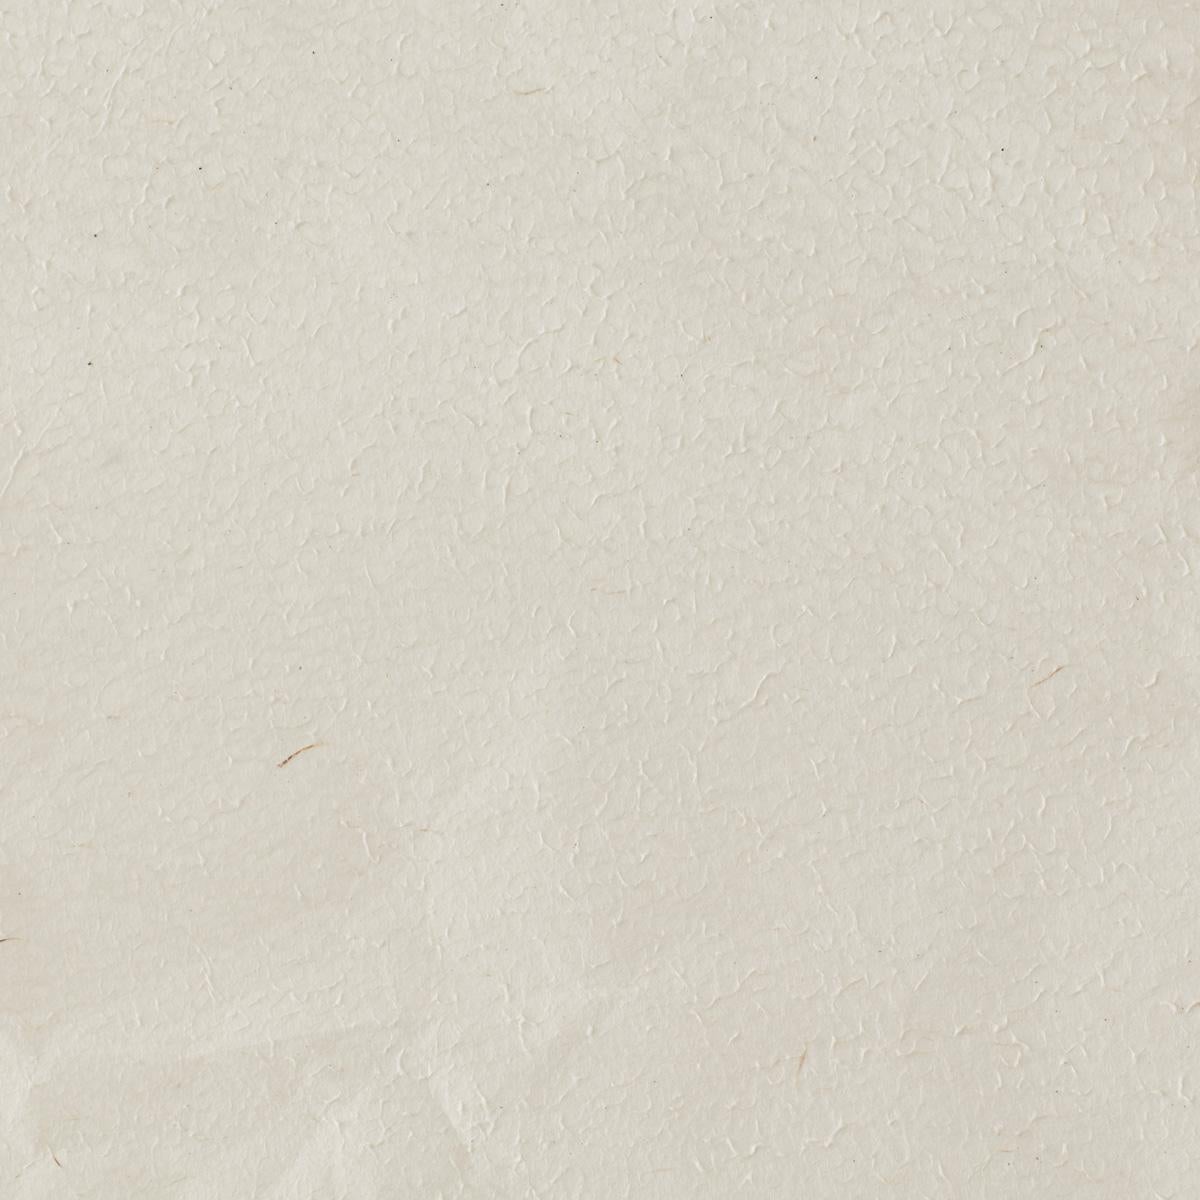 David Horan Paper floor light in polished finish for Béton Brut, UK, 2022 For Sale 1